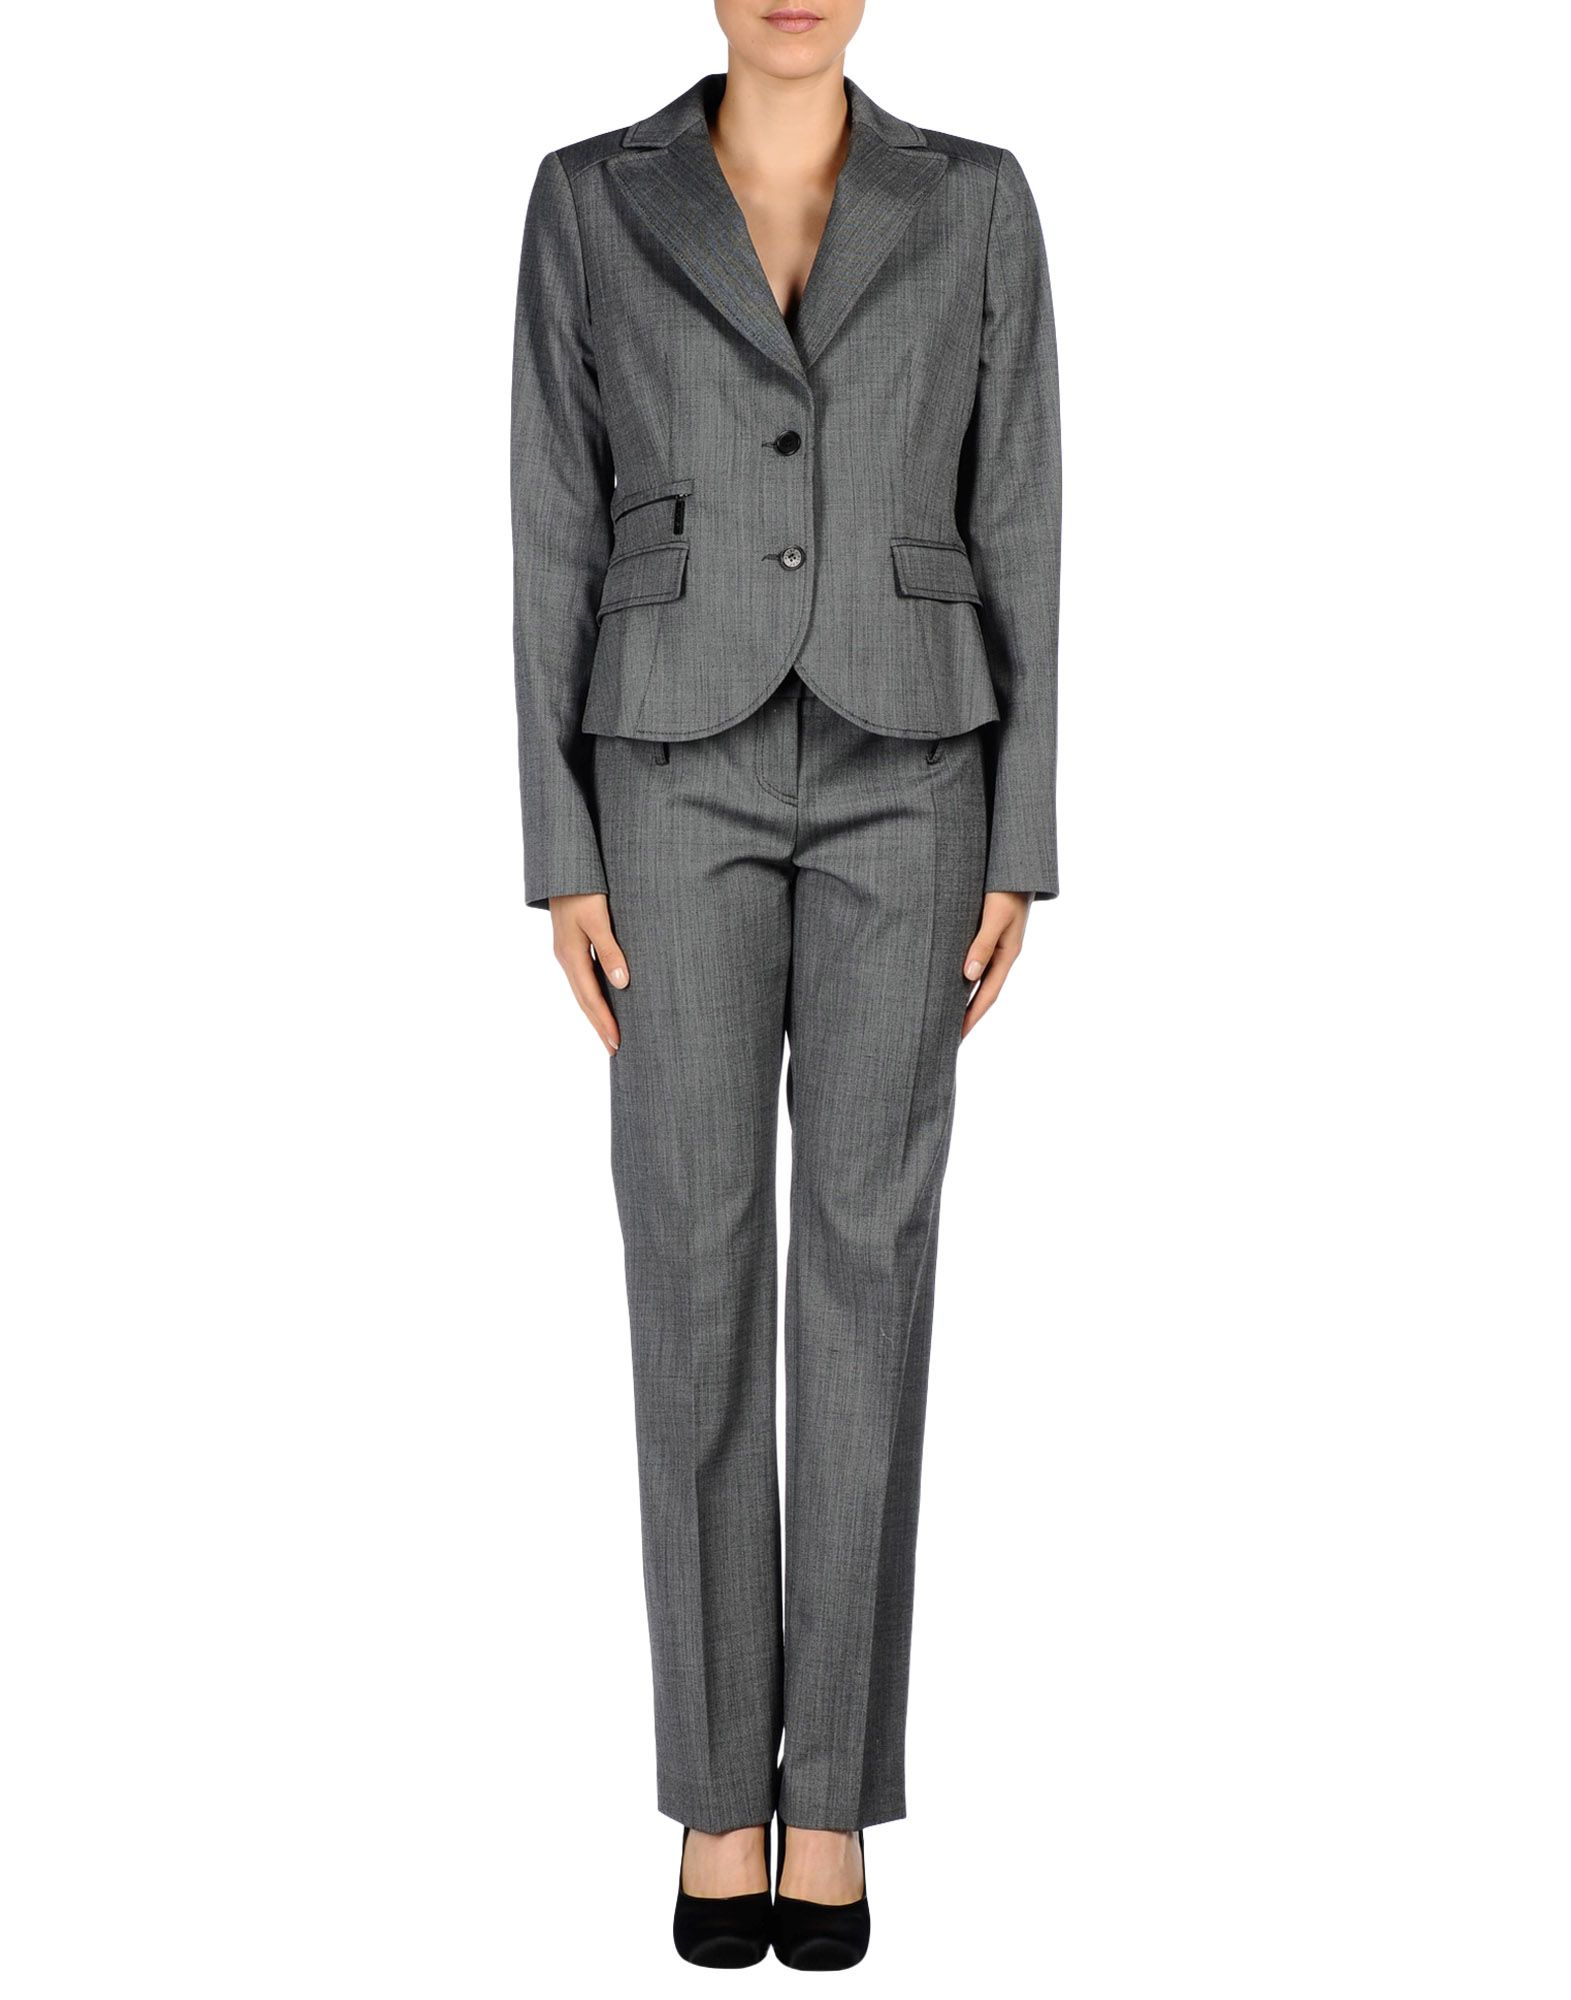 Fashion Women Suits Custom Women Suit Light Gray Lady Suit